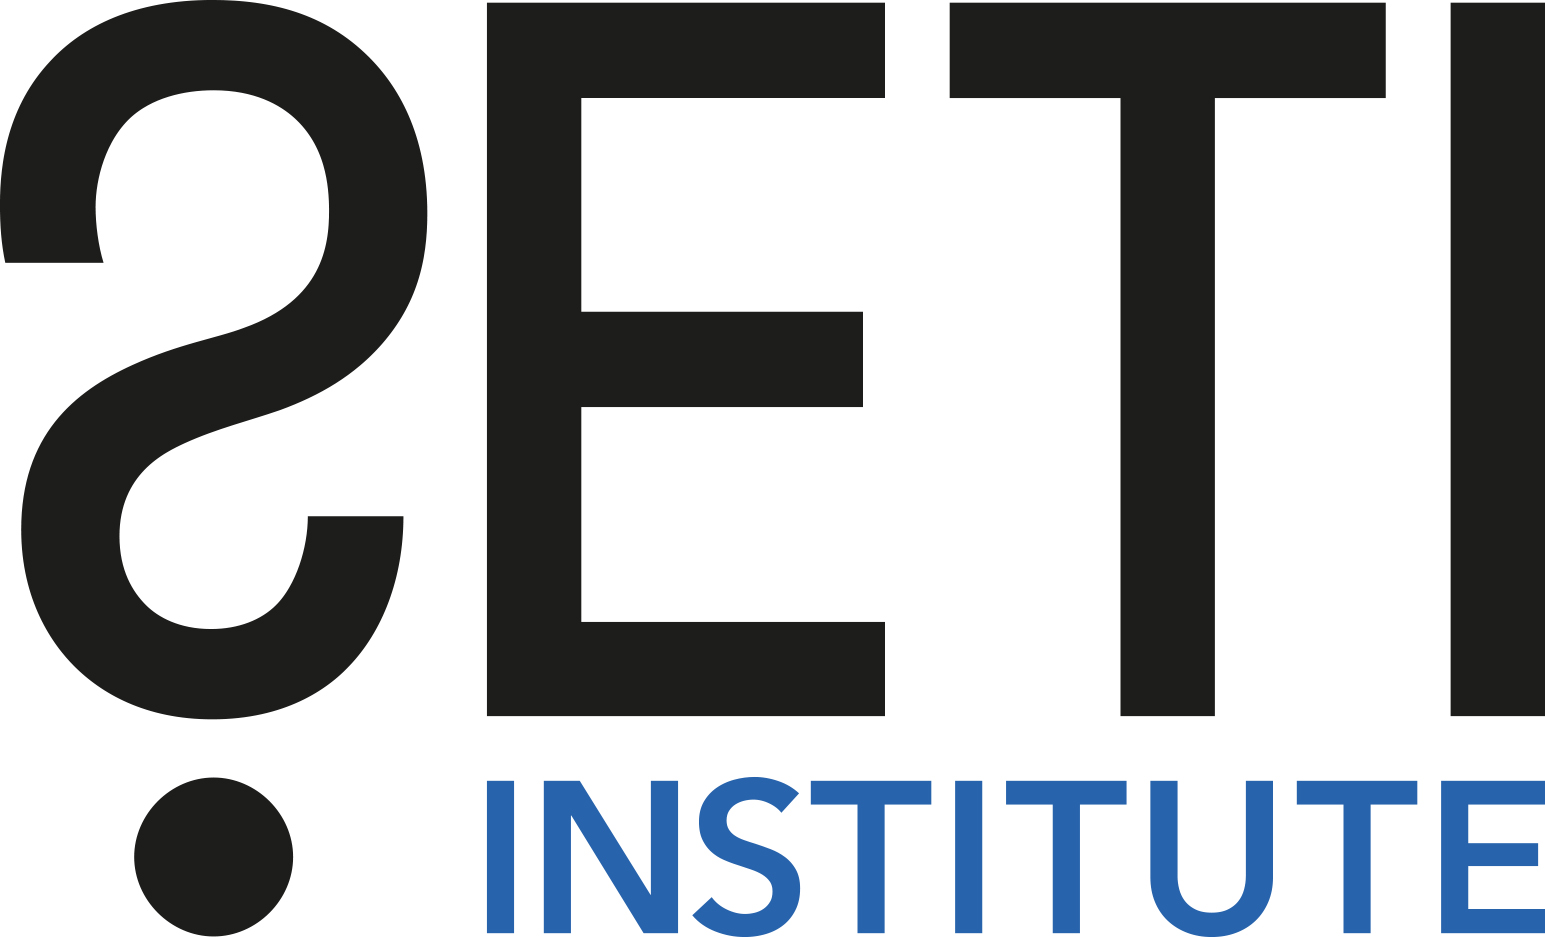 The SETI Institute